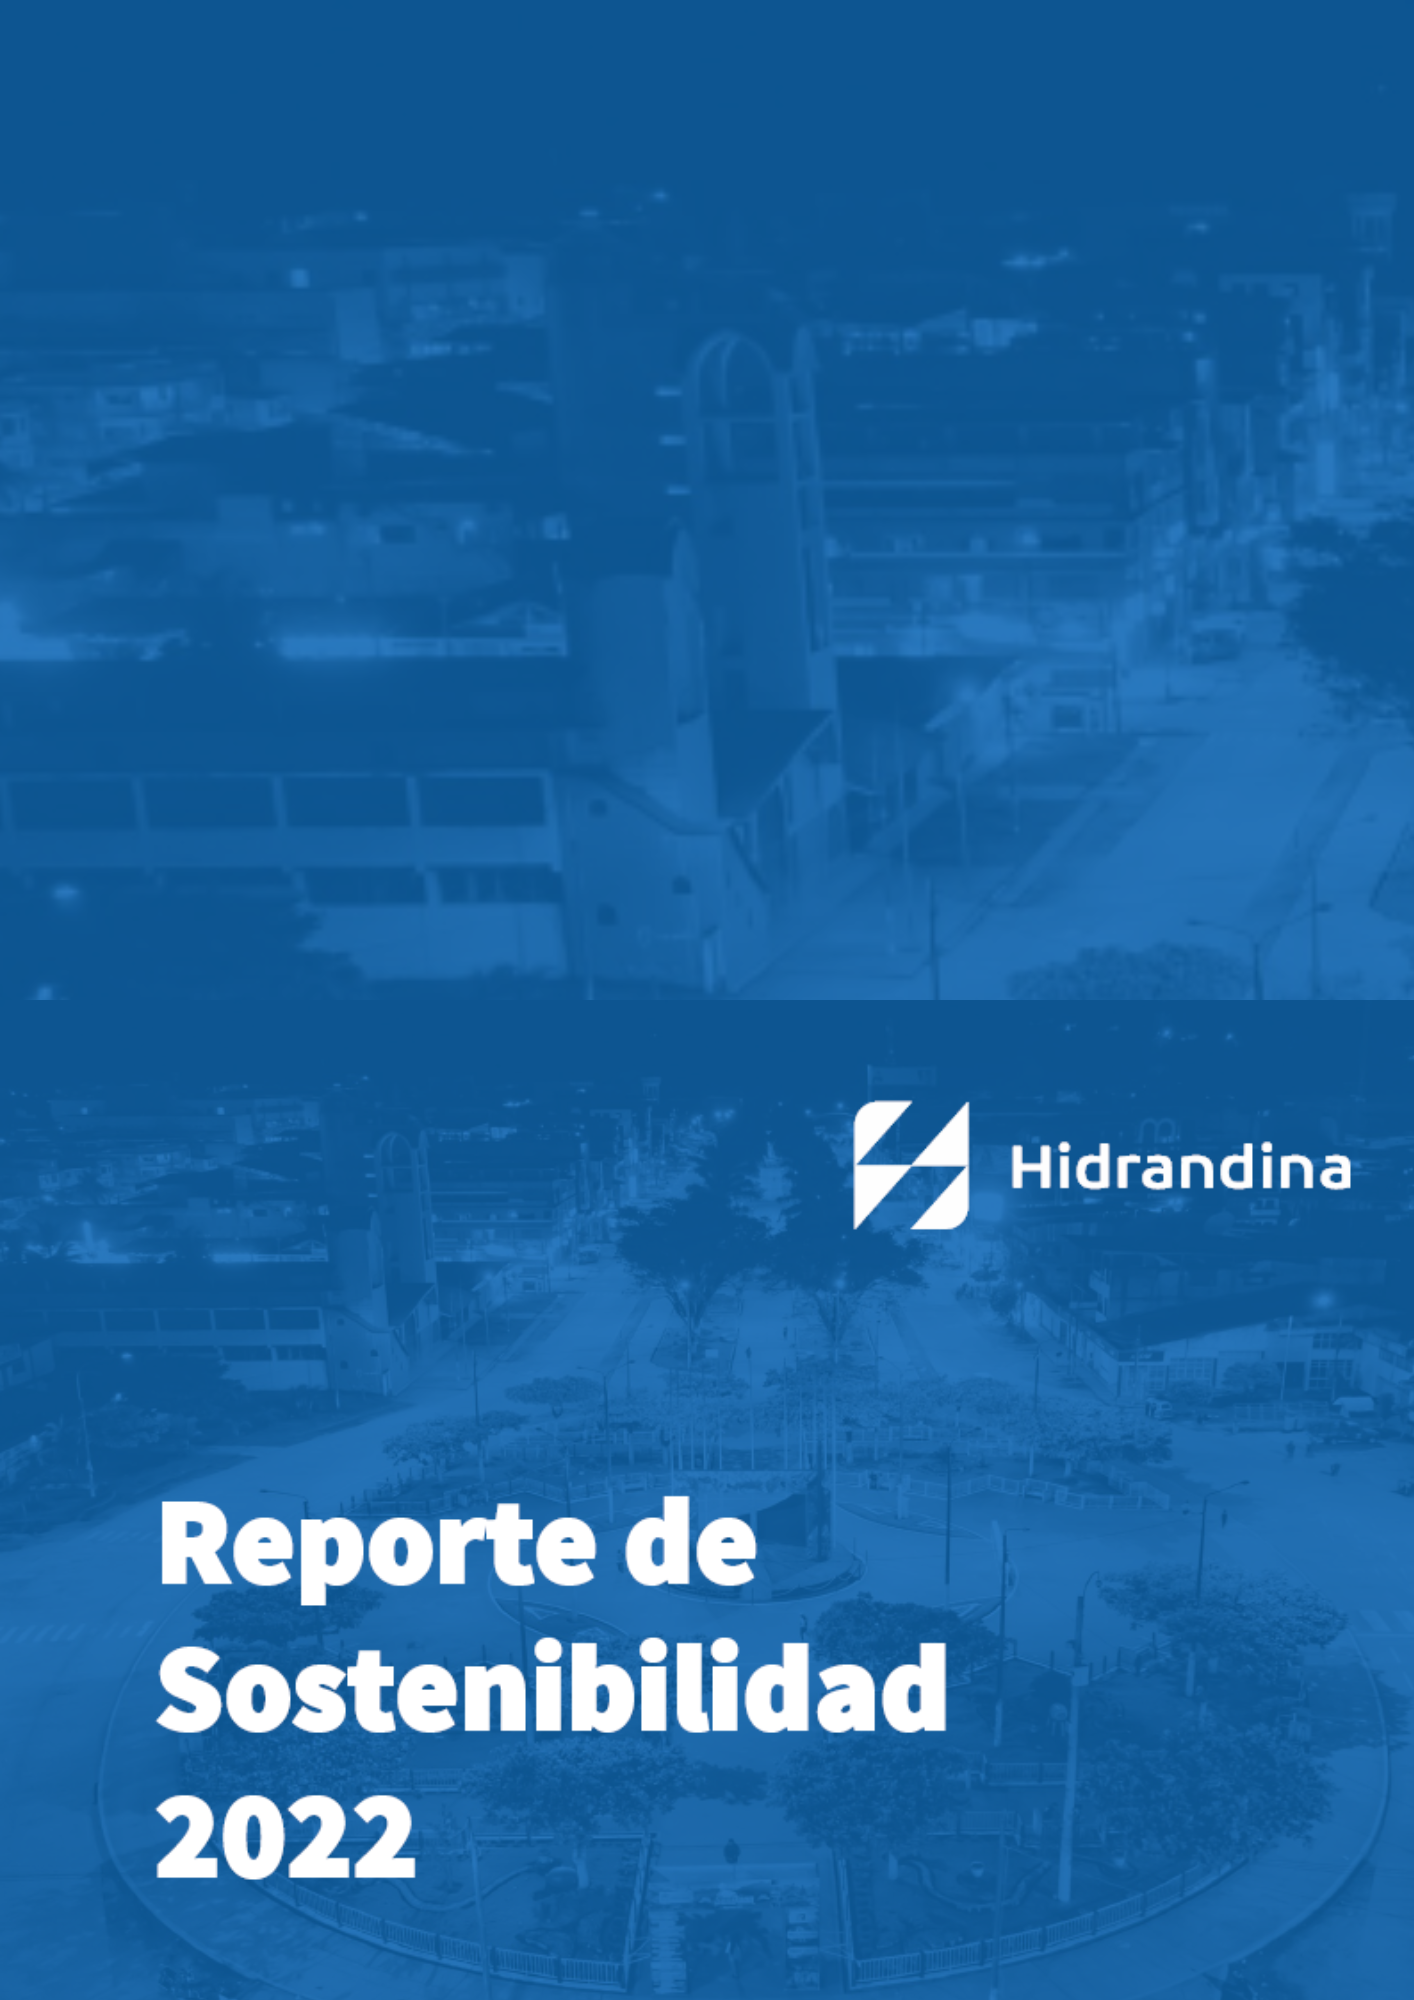 Vista preliminar de documento Reporte de Sostenibilidad Hidrandina 2022